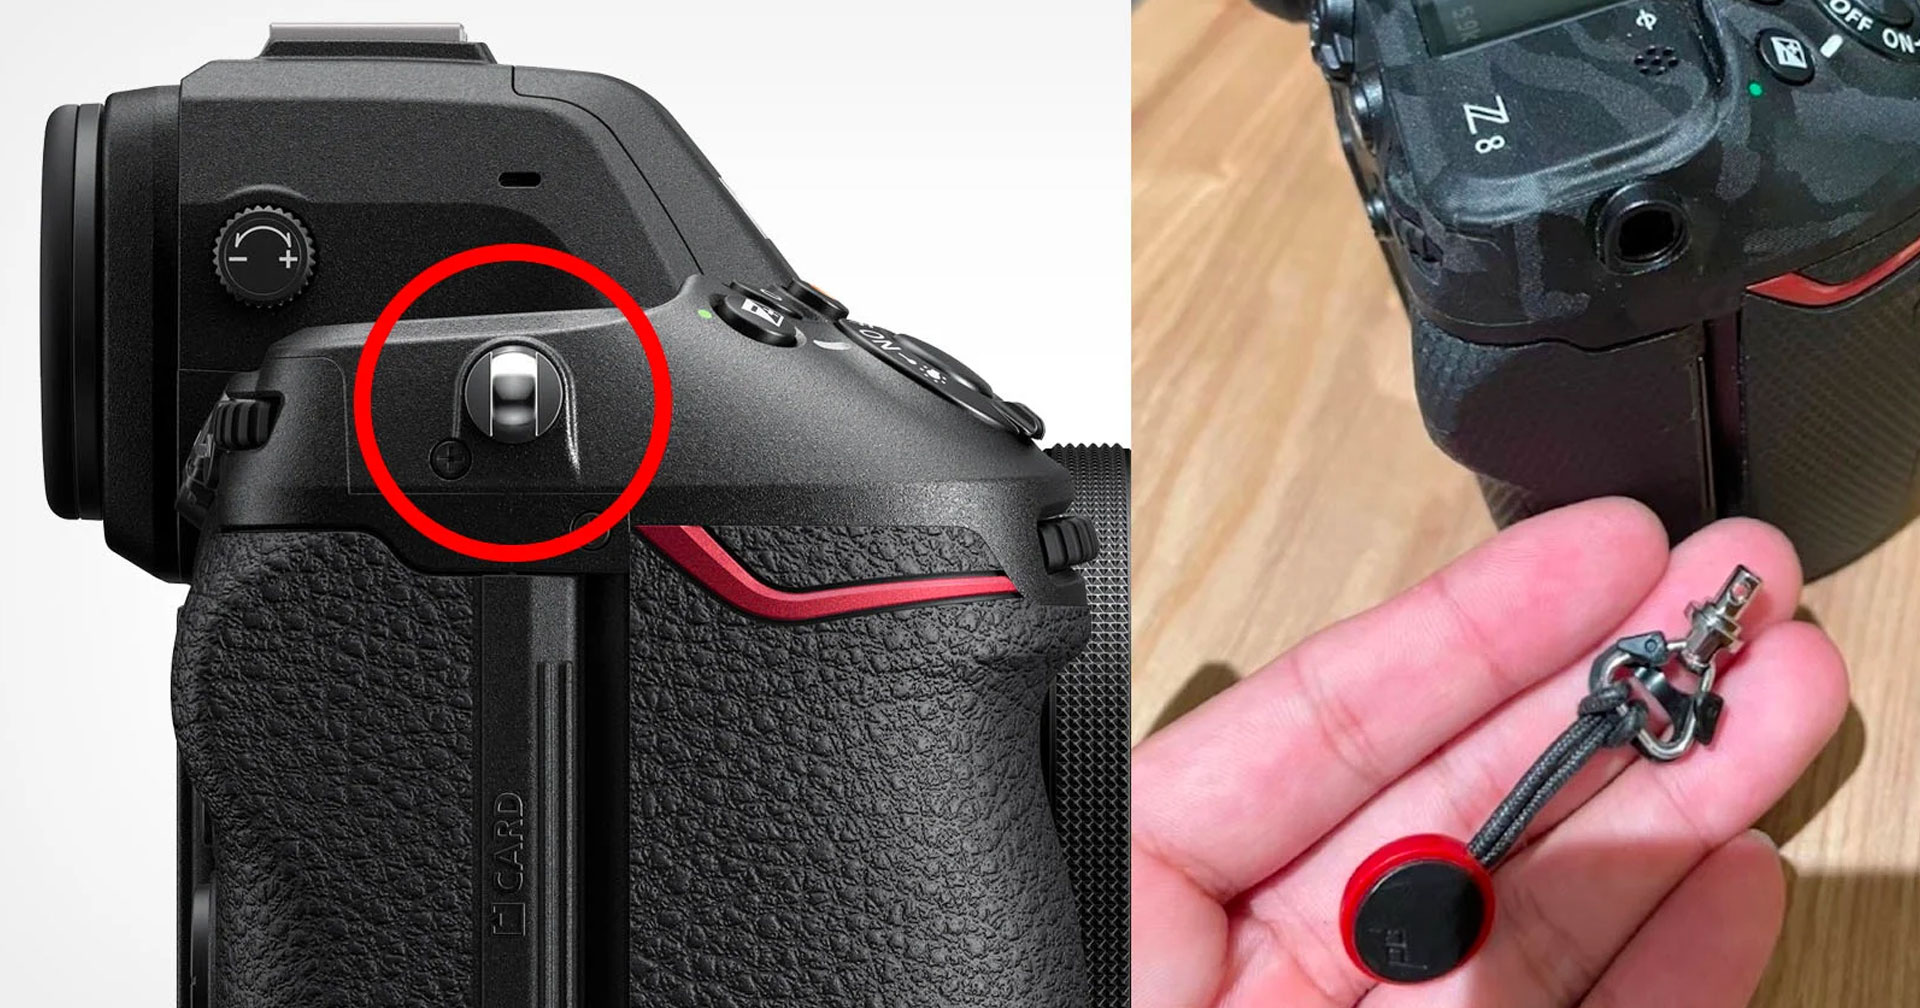 พบผู้ใช้กล้อง Nikon Z8 เจอปัญหาหูสายคล้องกล้องหลุด อาจทำให้เกิดความเสียหายได้!